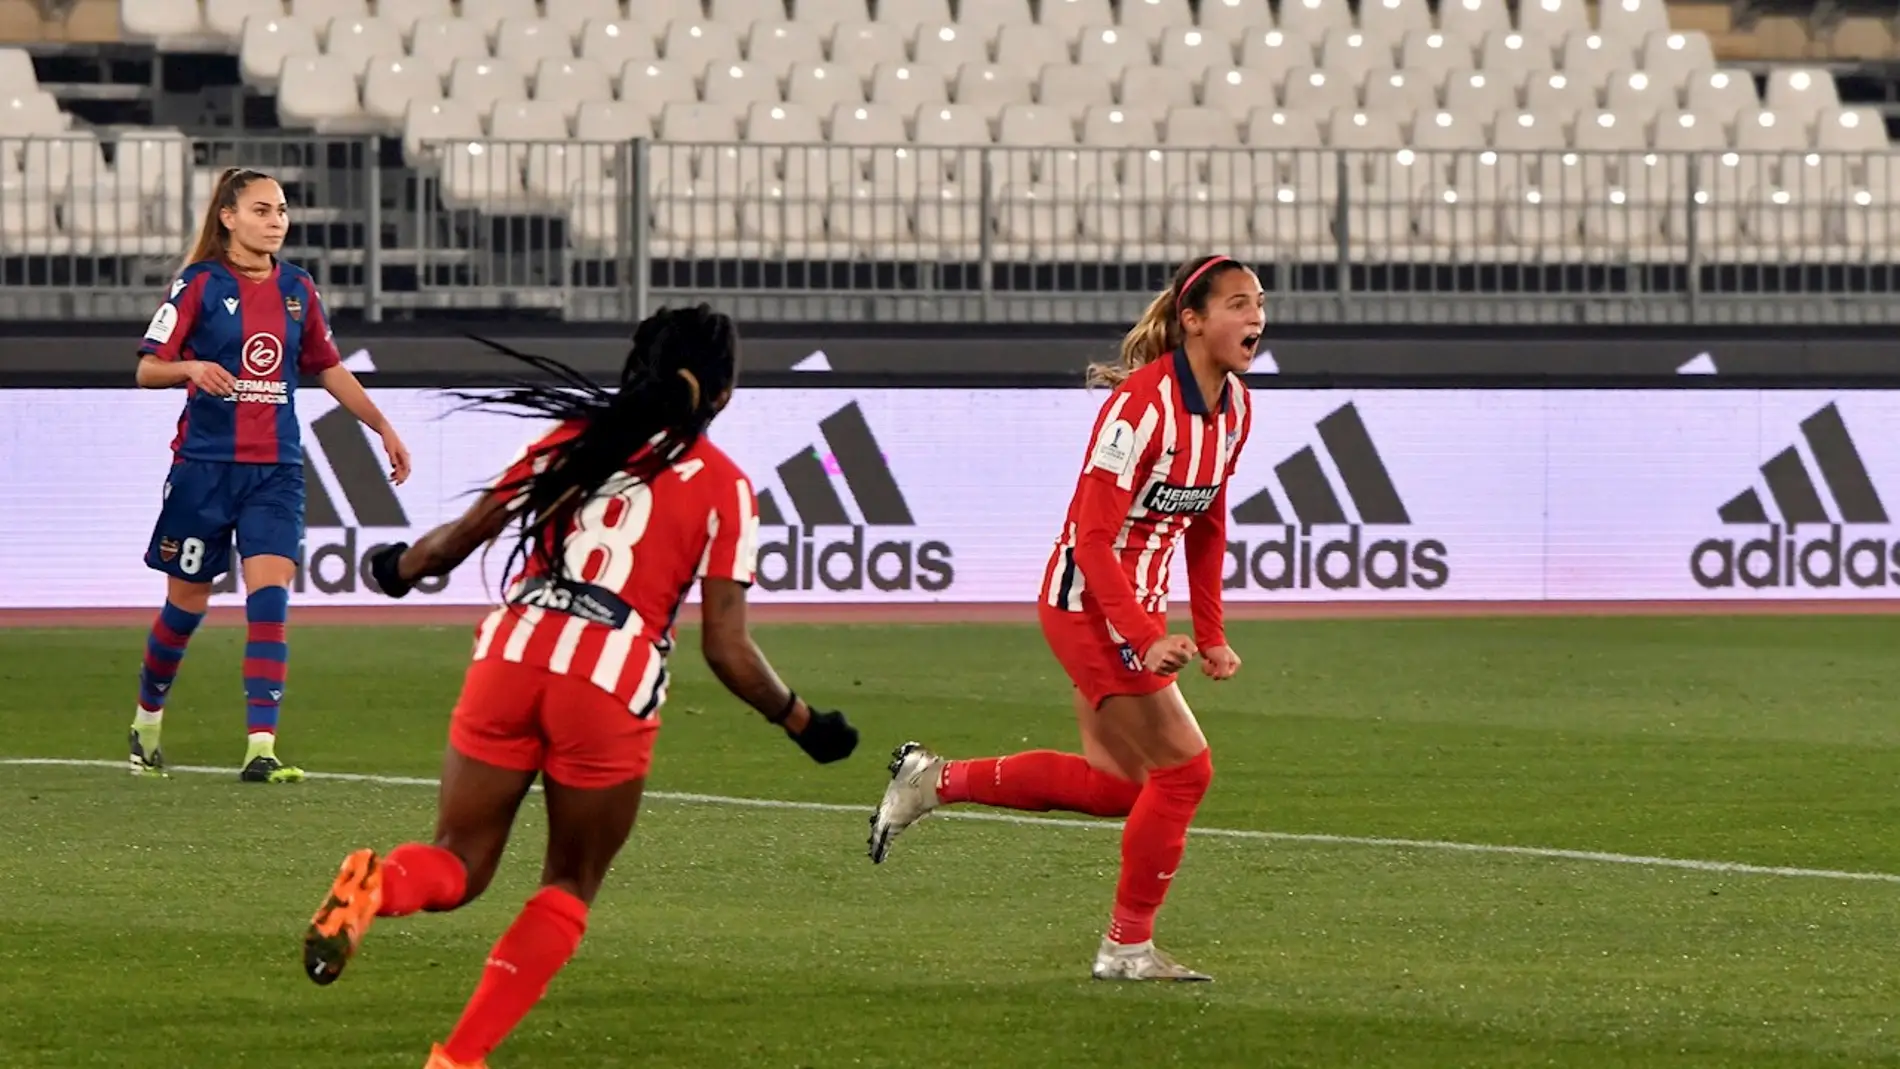  Las jugadoras del Atlético de Madrid Deyna Castellanos y Ludmila celebran un gol 